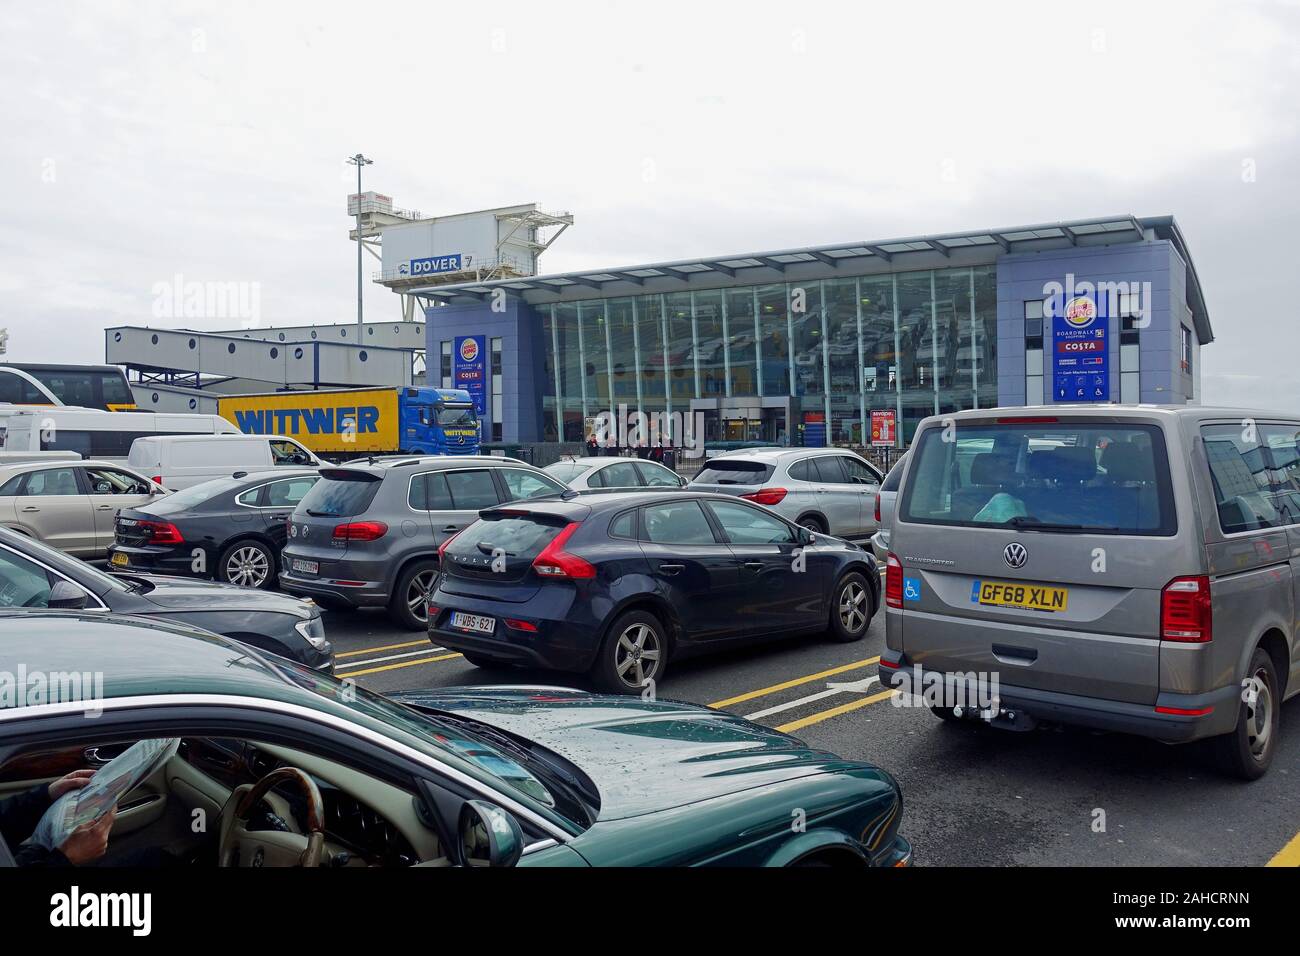 Les voitures d'attente pour le ferry à l'extérieur de l'aérogare passagers, Port de Douvres Banque D'Images